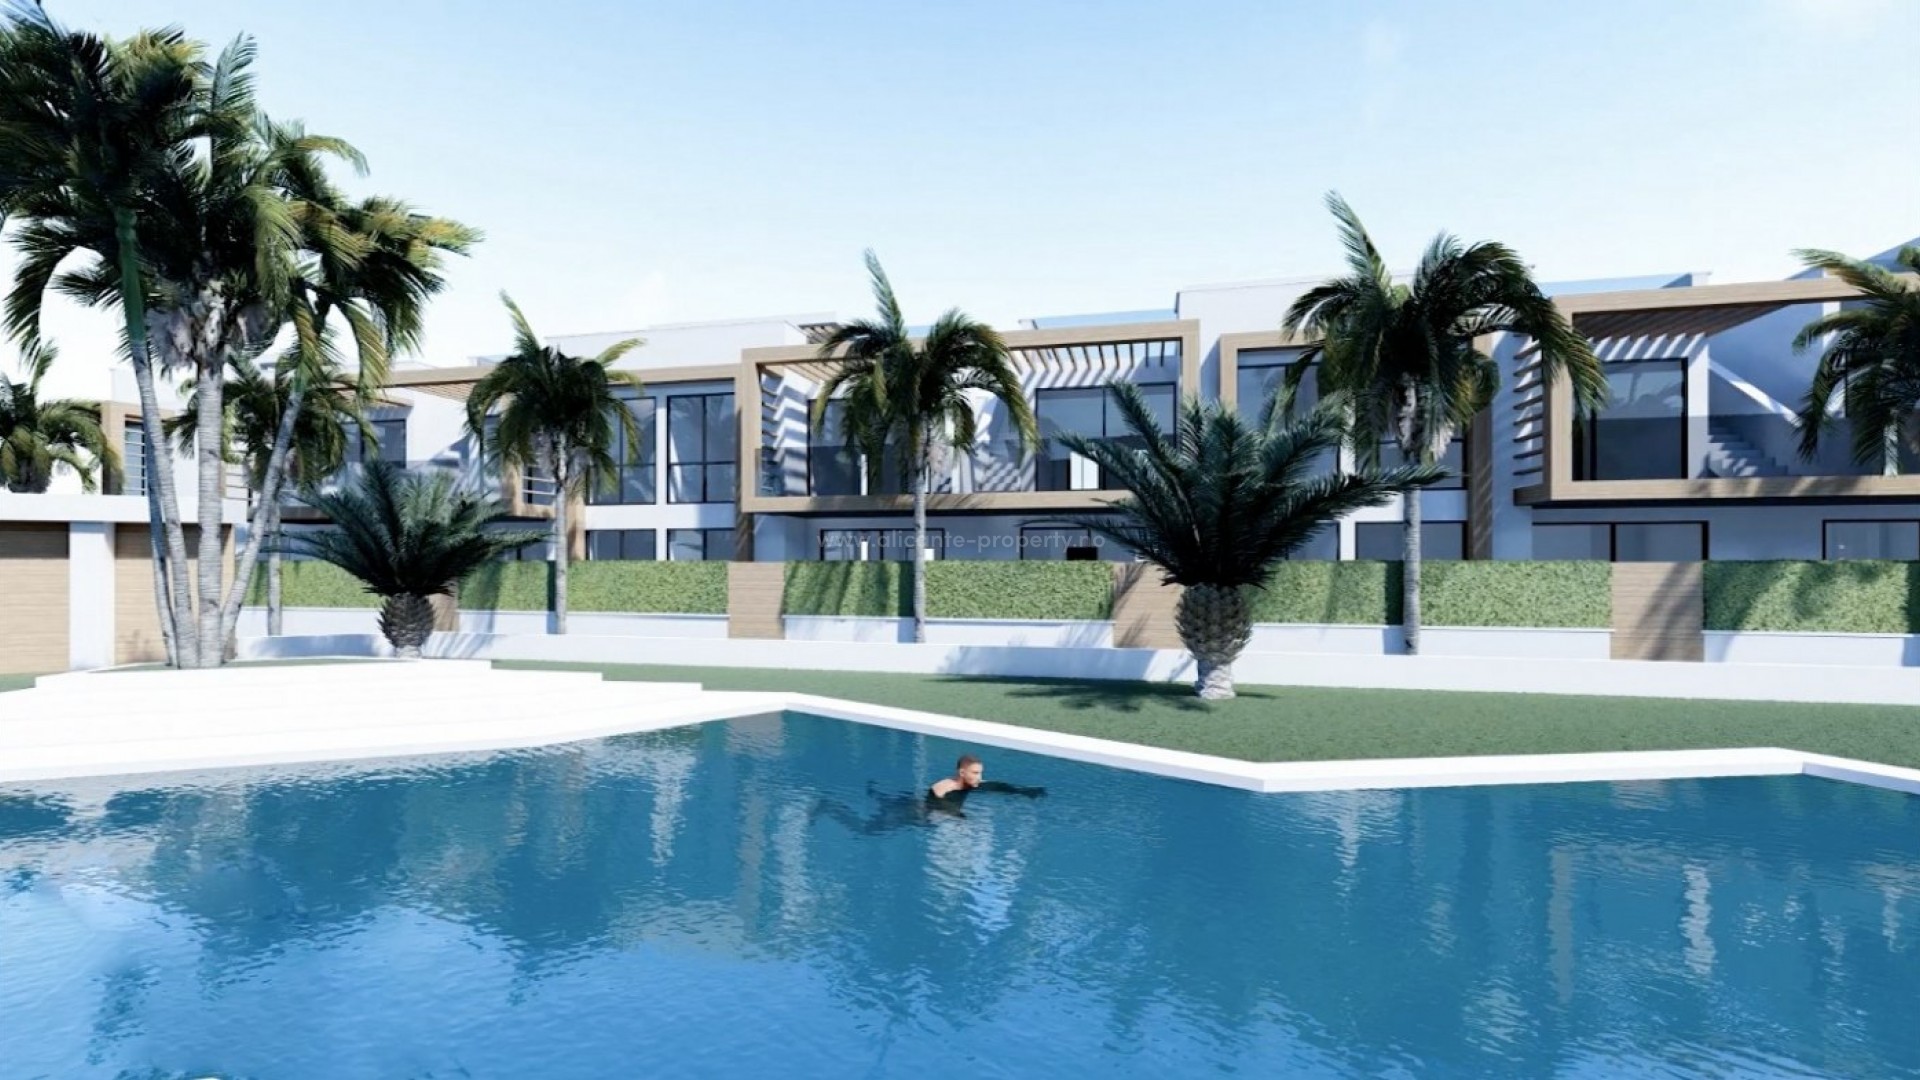 Nybygg bungalows/rekkehus i Orihuela Costa,2 og 3 soverom, toppetasje med privat solarium, privat hage, felles basseng. 5 min fra Villamartin golf